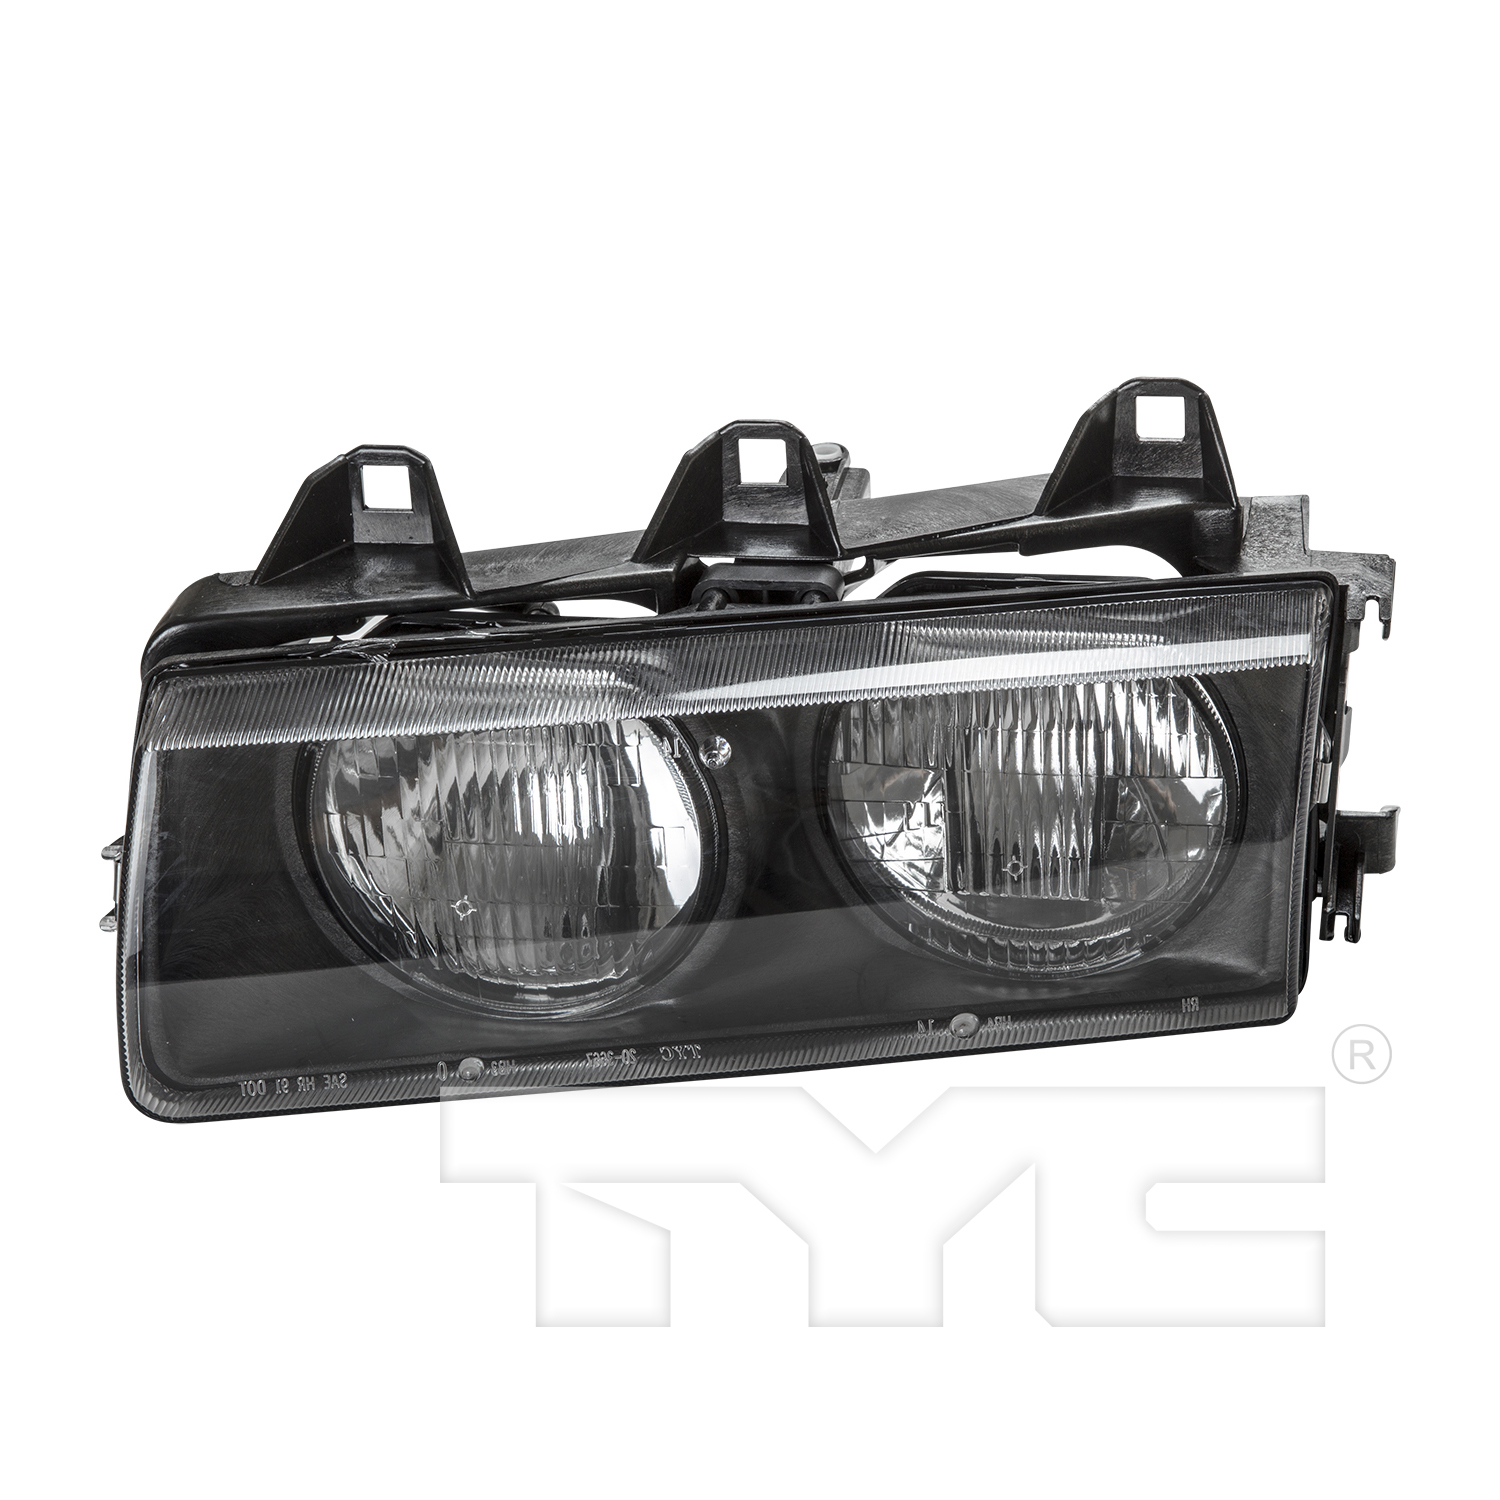 Aftermarket HEADLIGHTS for BMW - 328I, 328i,99-99,LT Headlamp assy composite